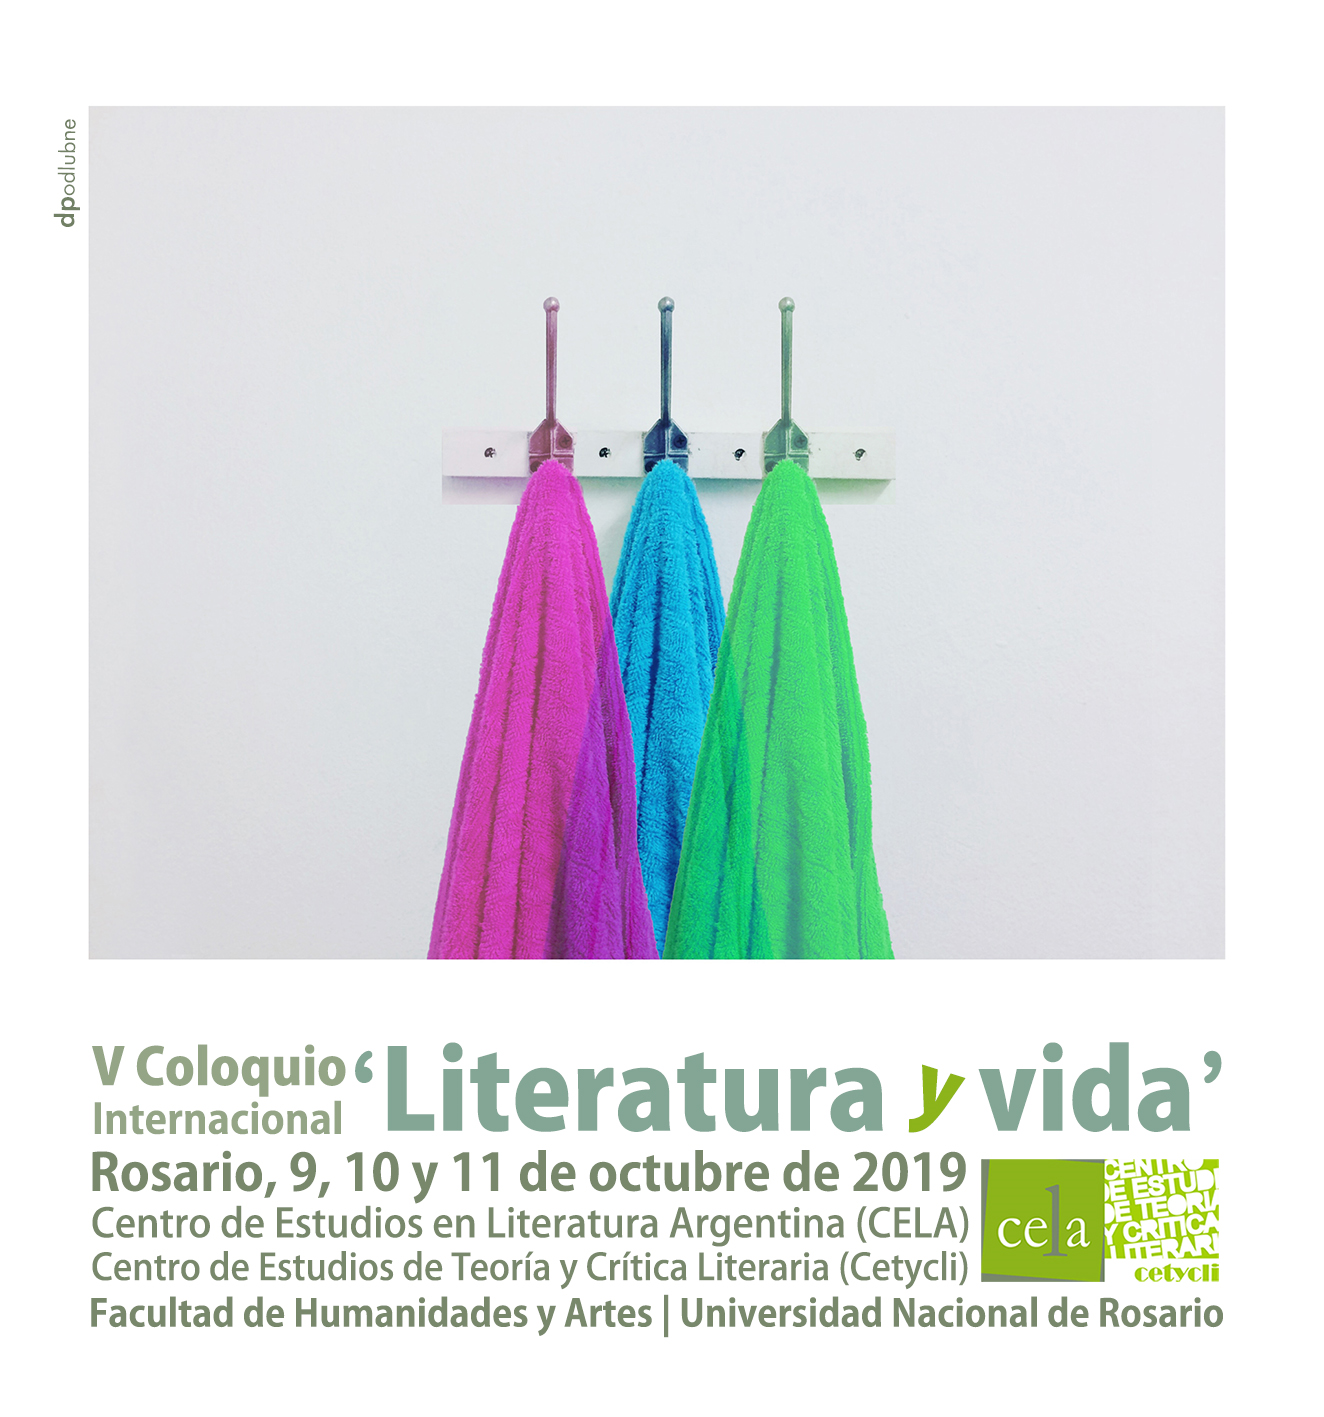 V Coloquio Internacional "Literatura y vida"